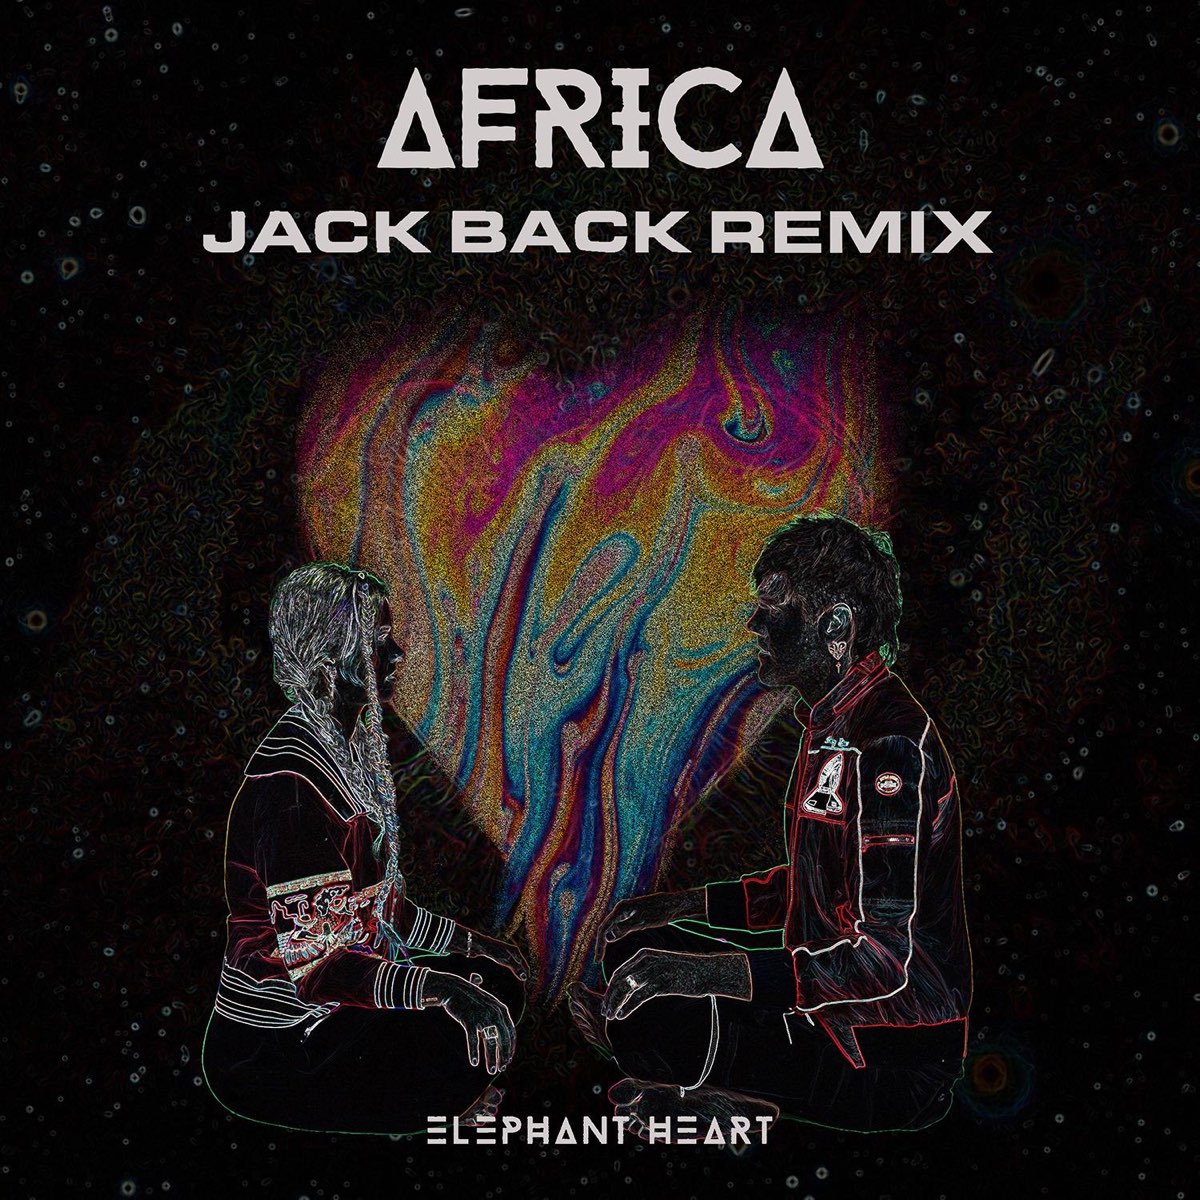 Elephant remix. Jack back. Africa Jack. Elephant Heart. Elefant Heart.